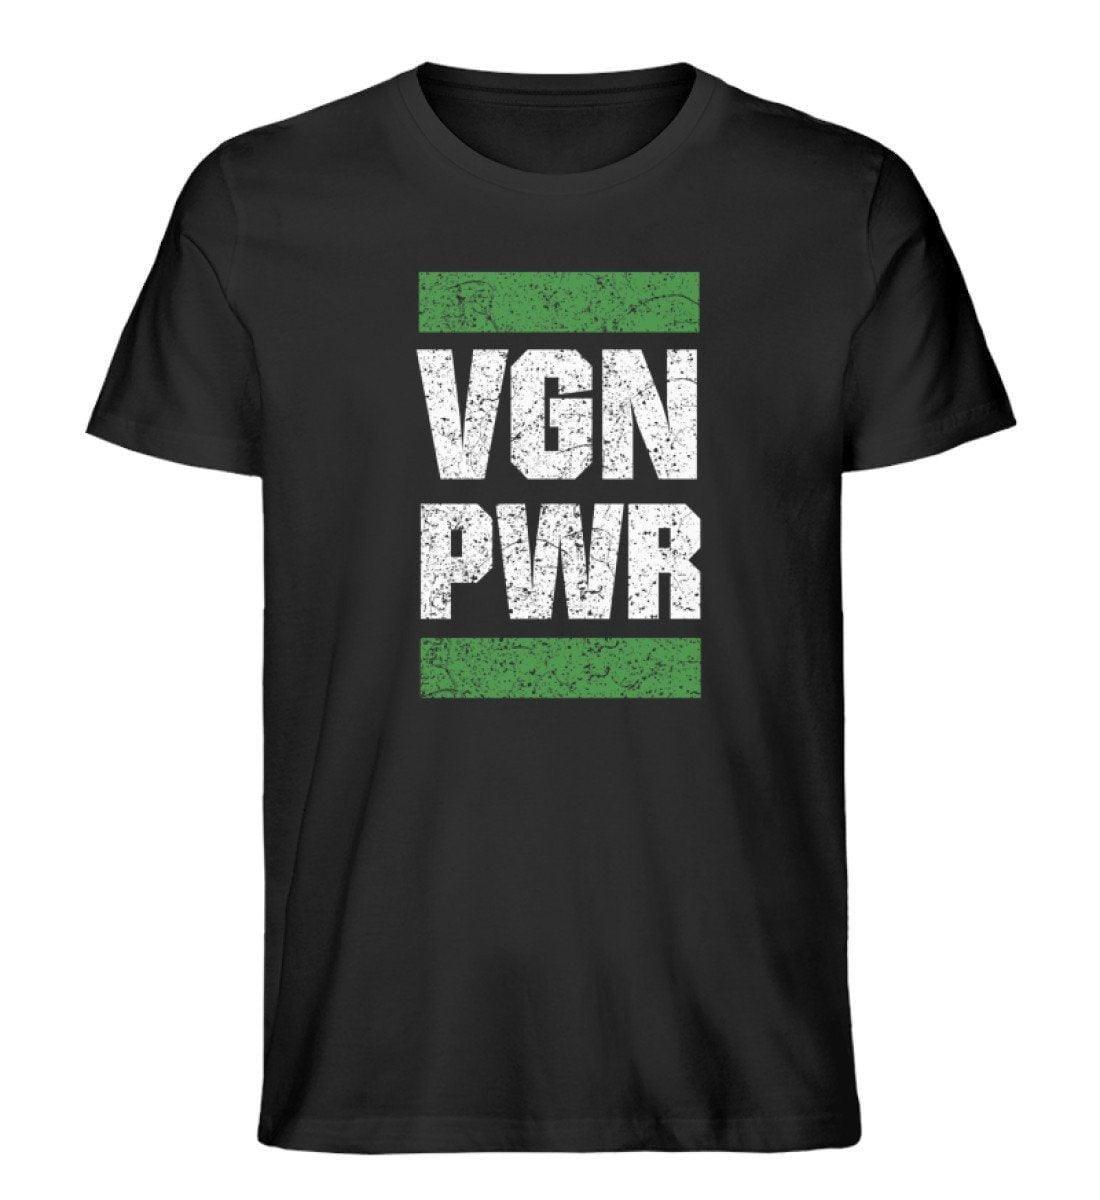 VGN PWR - Unisex Organic Shirt Rocker T-Shirt ST/ST Shirtee Schwarz S 